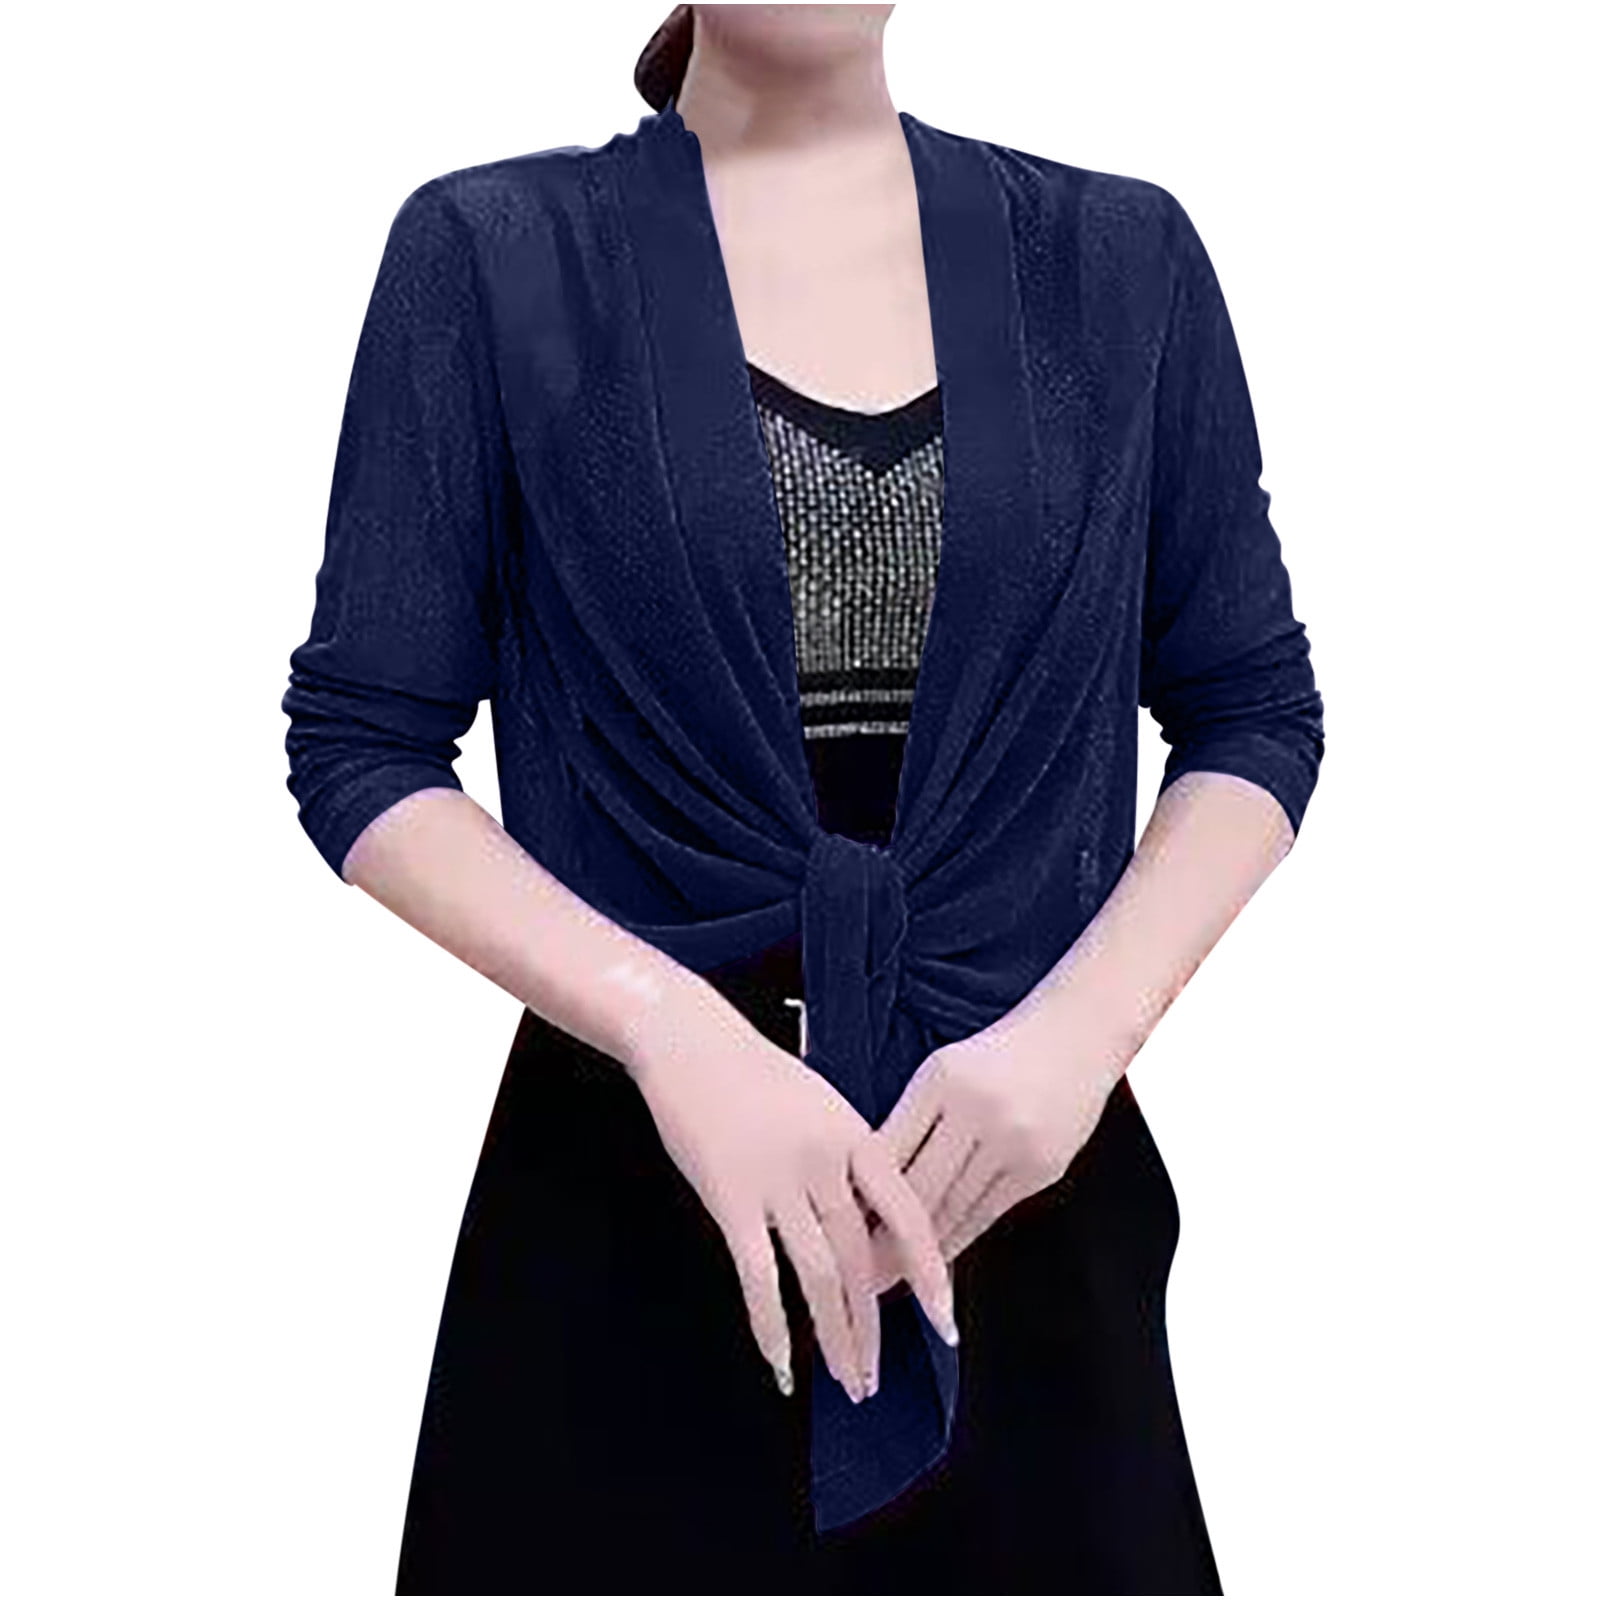 EDHITNR Cardigan for Women Long Sleeved Cardigan Soft Chiffon